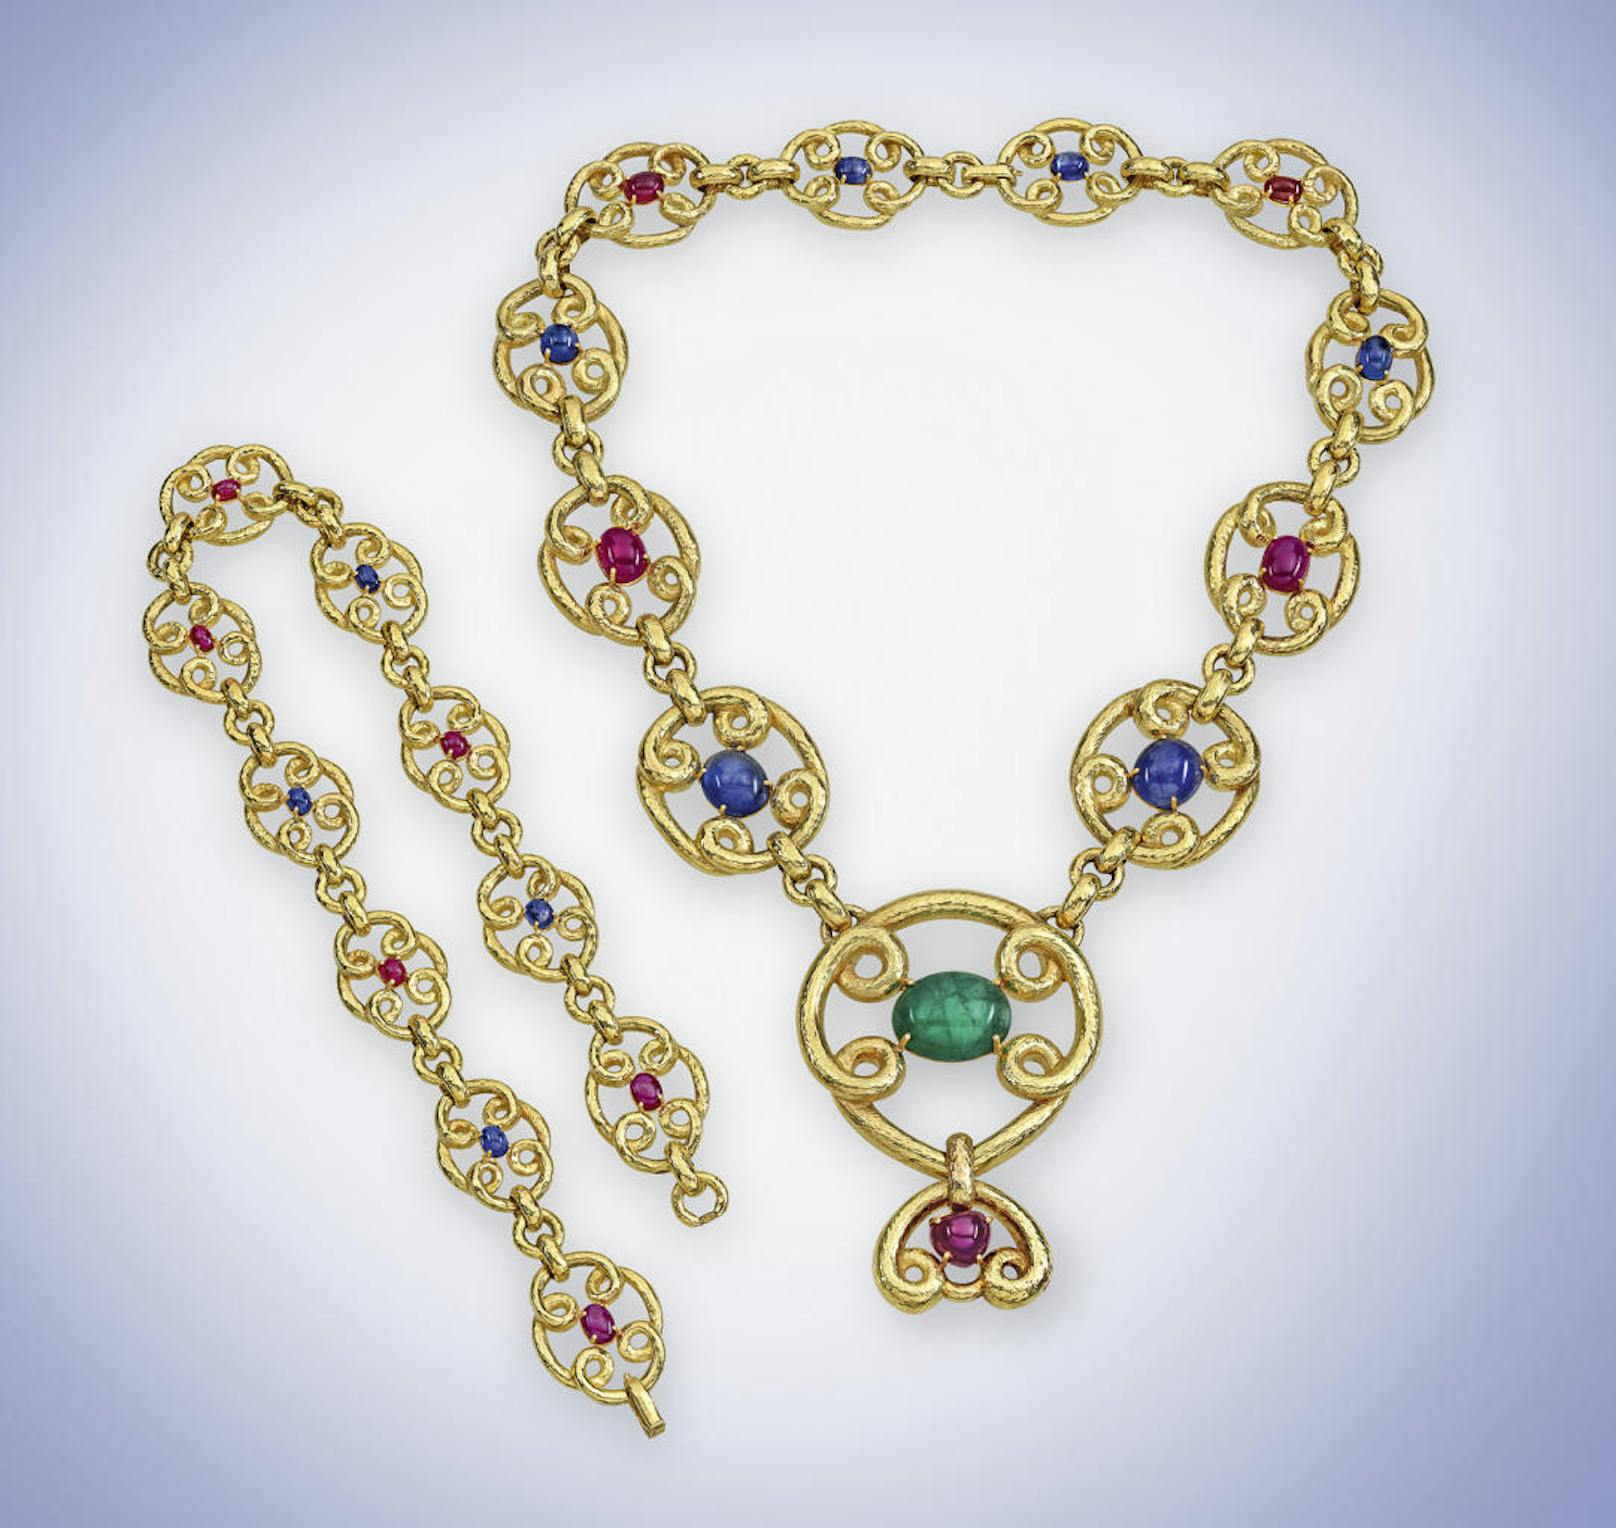 Dorotheum Auktion Juwelen (27.4.2017): David Webb Farbsteincollier um 40.000 bis 60.000 Euro. Der US-Designer Webb sorgt für viele Anfragen aus den USA